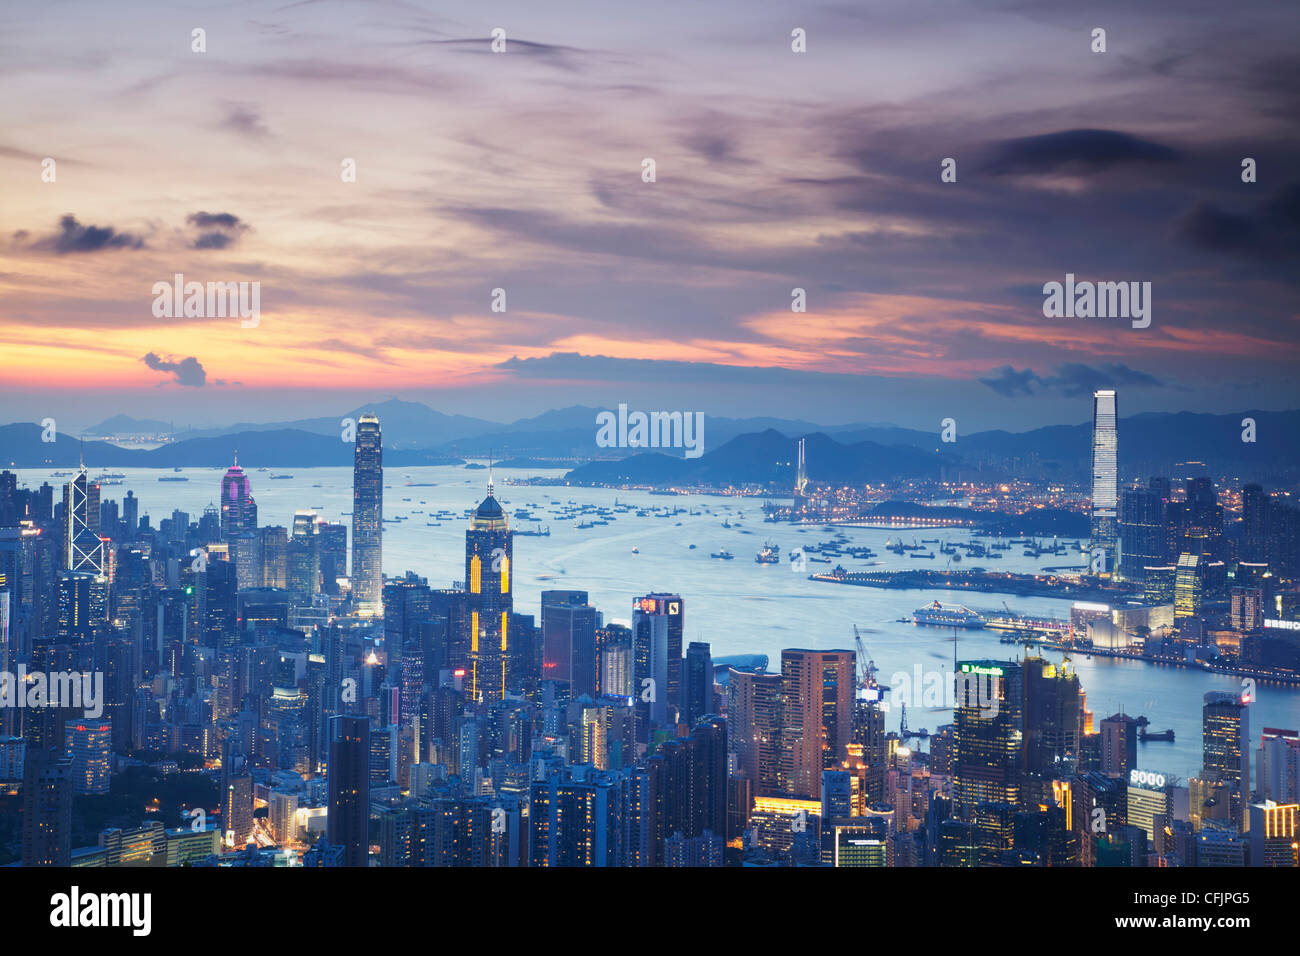 Hong Kong Island and Kowloon skylines at sunset, Hong Kong, China, Asia Stock Photo